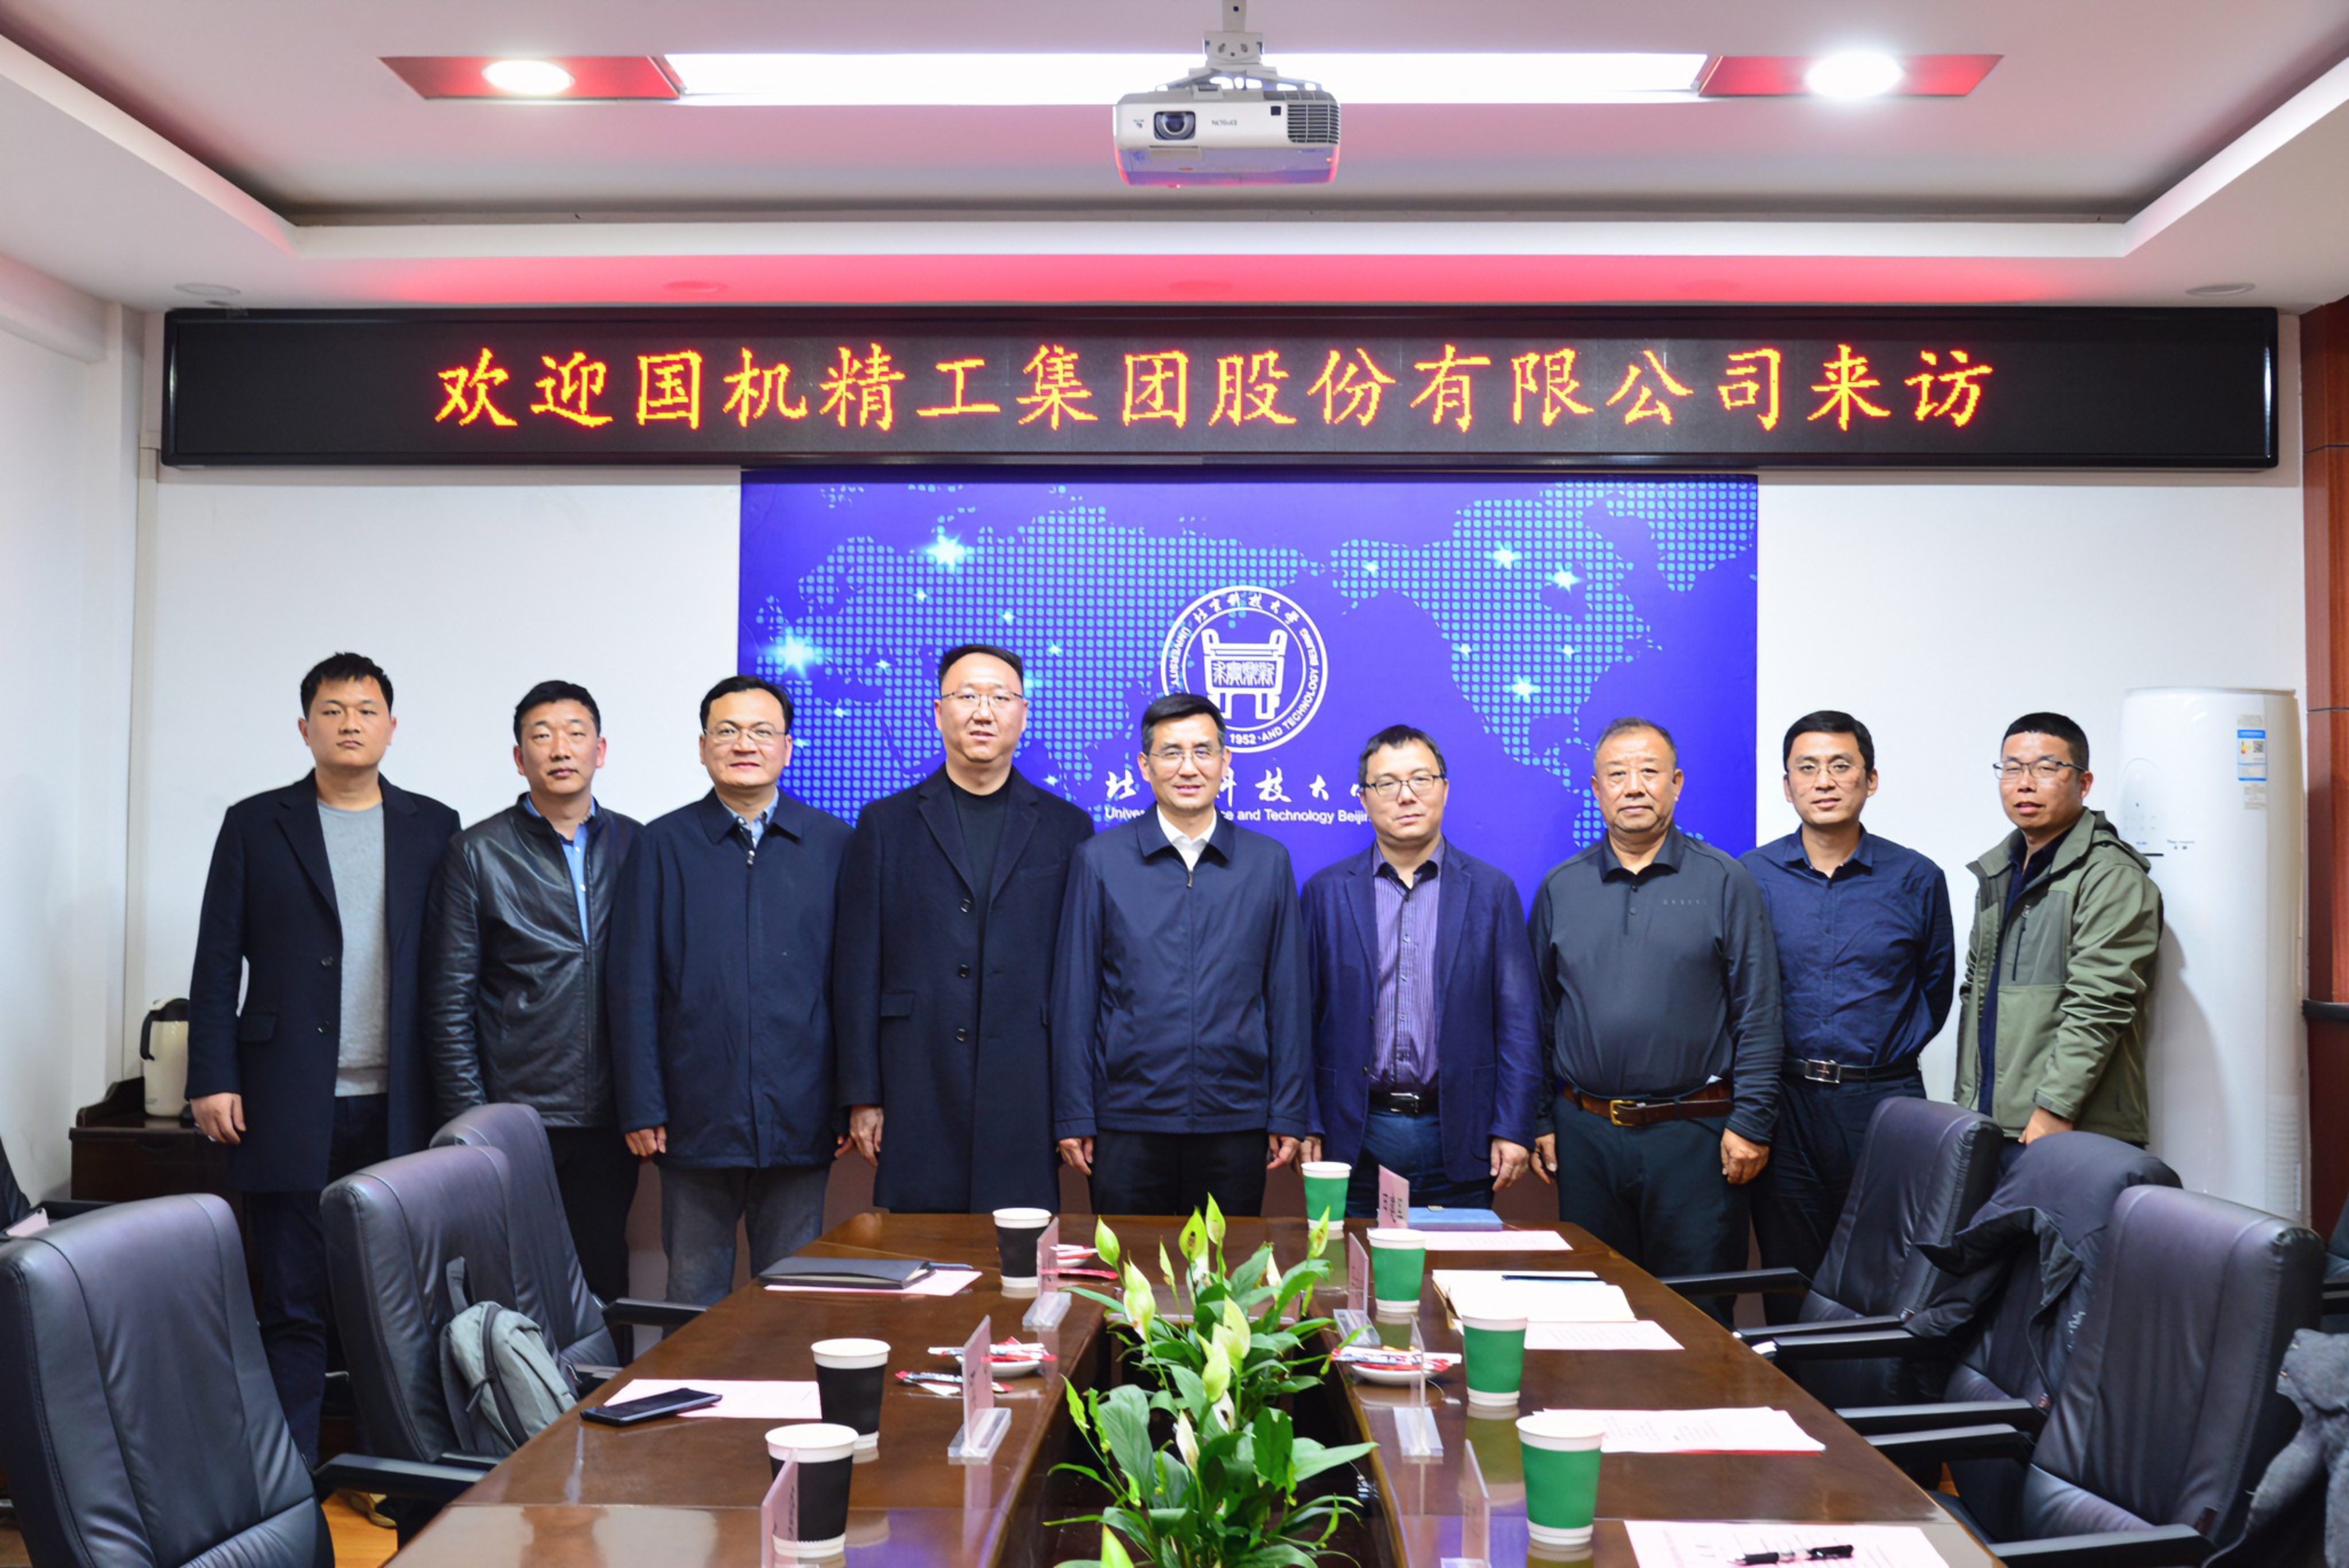 BOB真人官网董事长蒋蔚一行拜访北京科技大学 